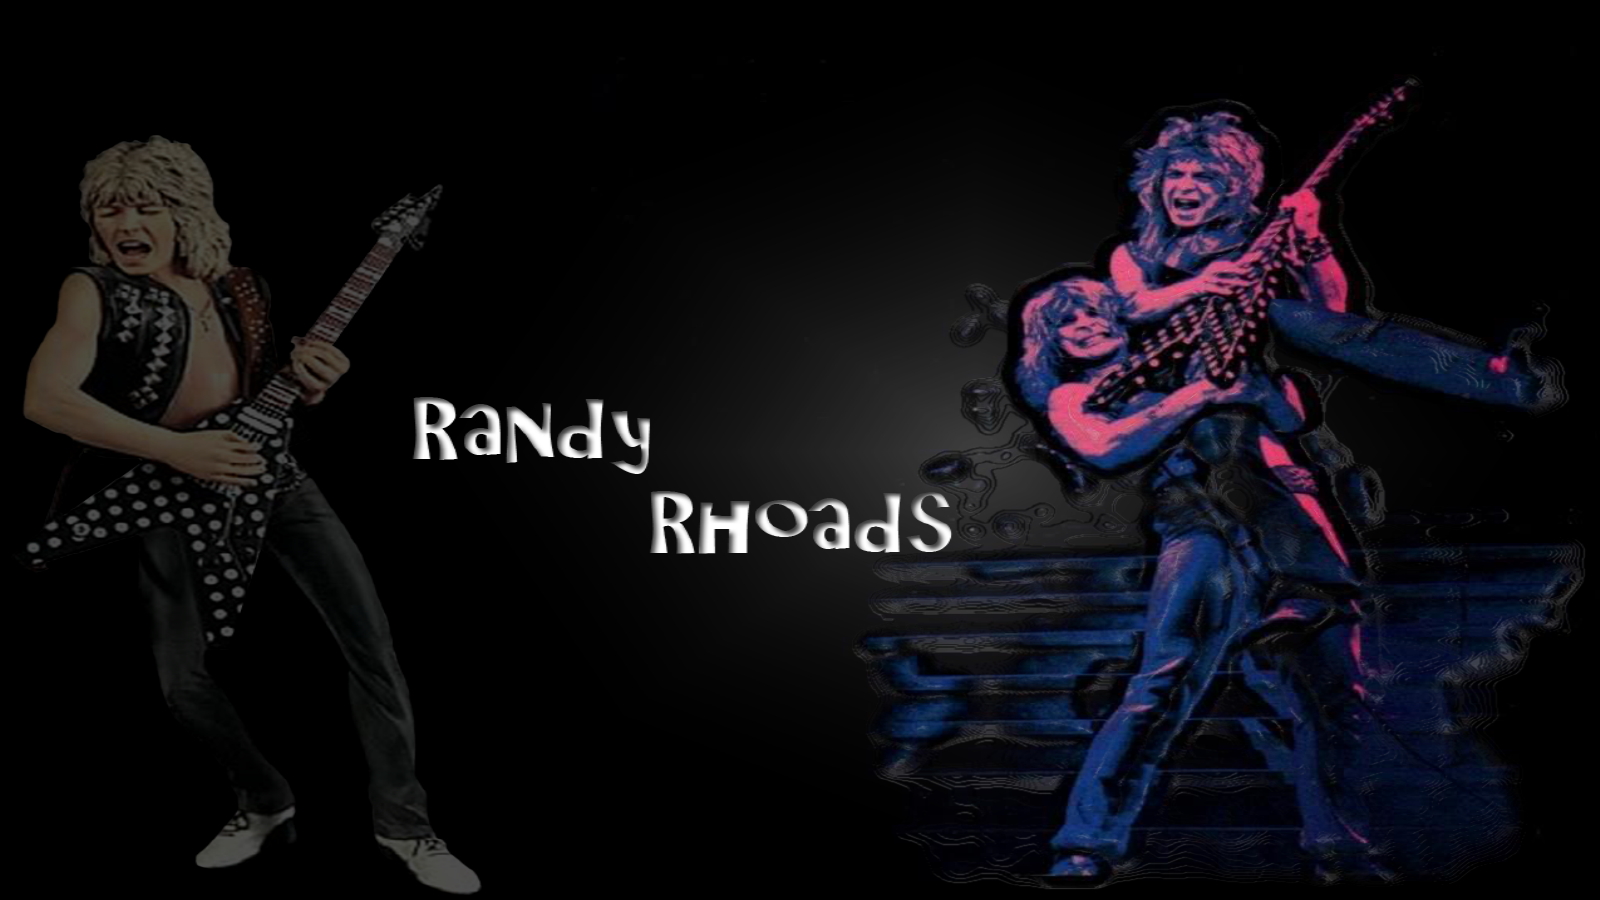 랜디 도마뱀 바탕 화면,기타리스트,어둠,음악가,소설 속의 인물,음악